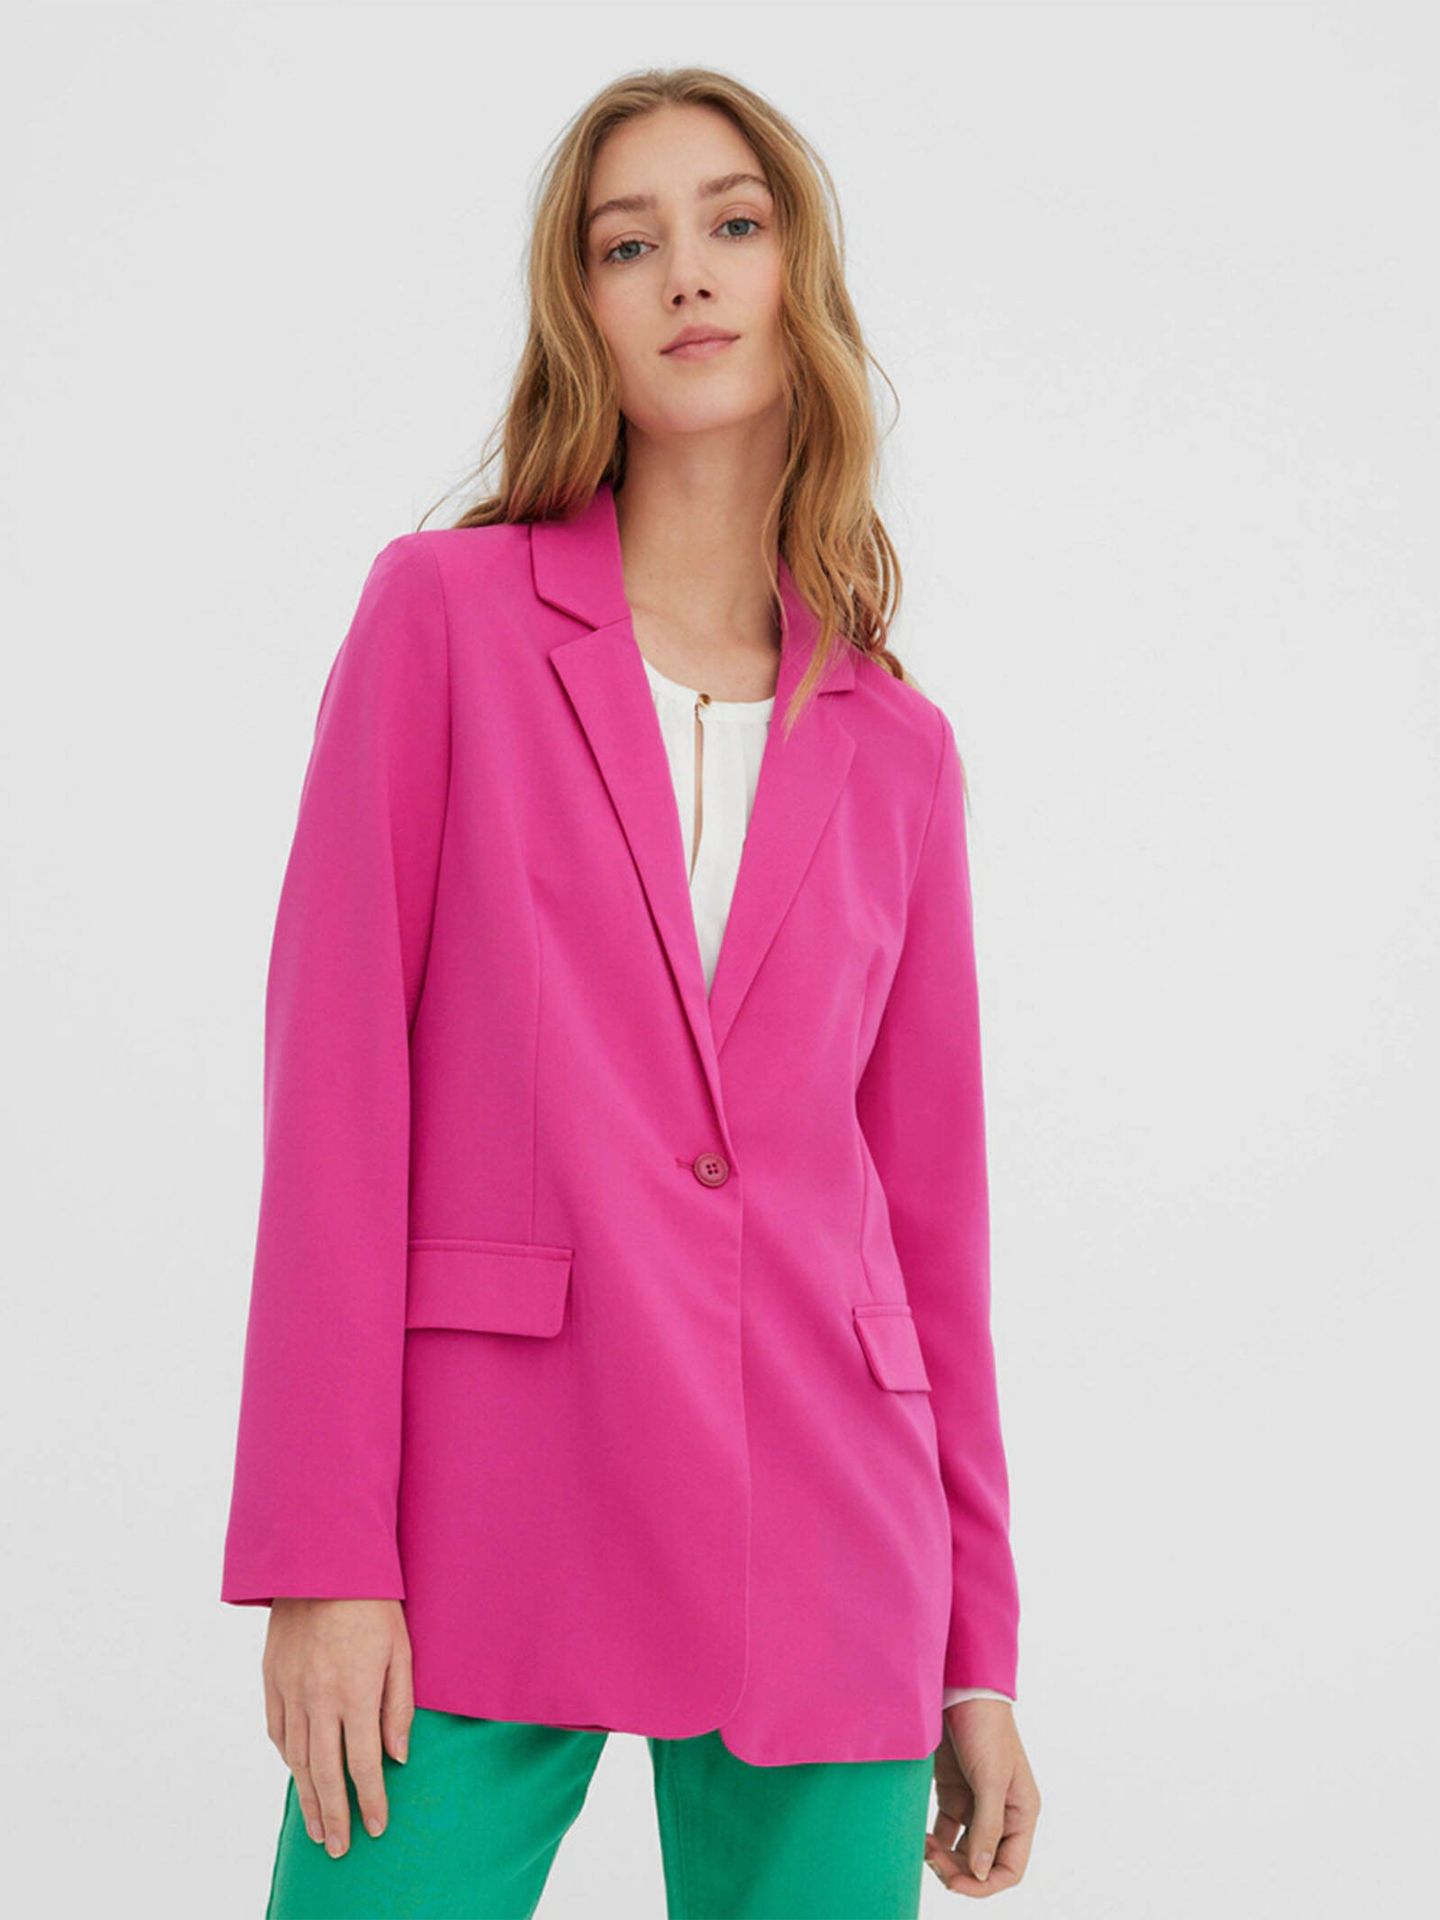 La chaqueta blazer que combina con el vestido de Zara. (El Corte Inglés/Cortesía)